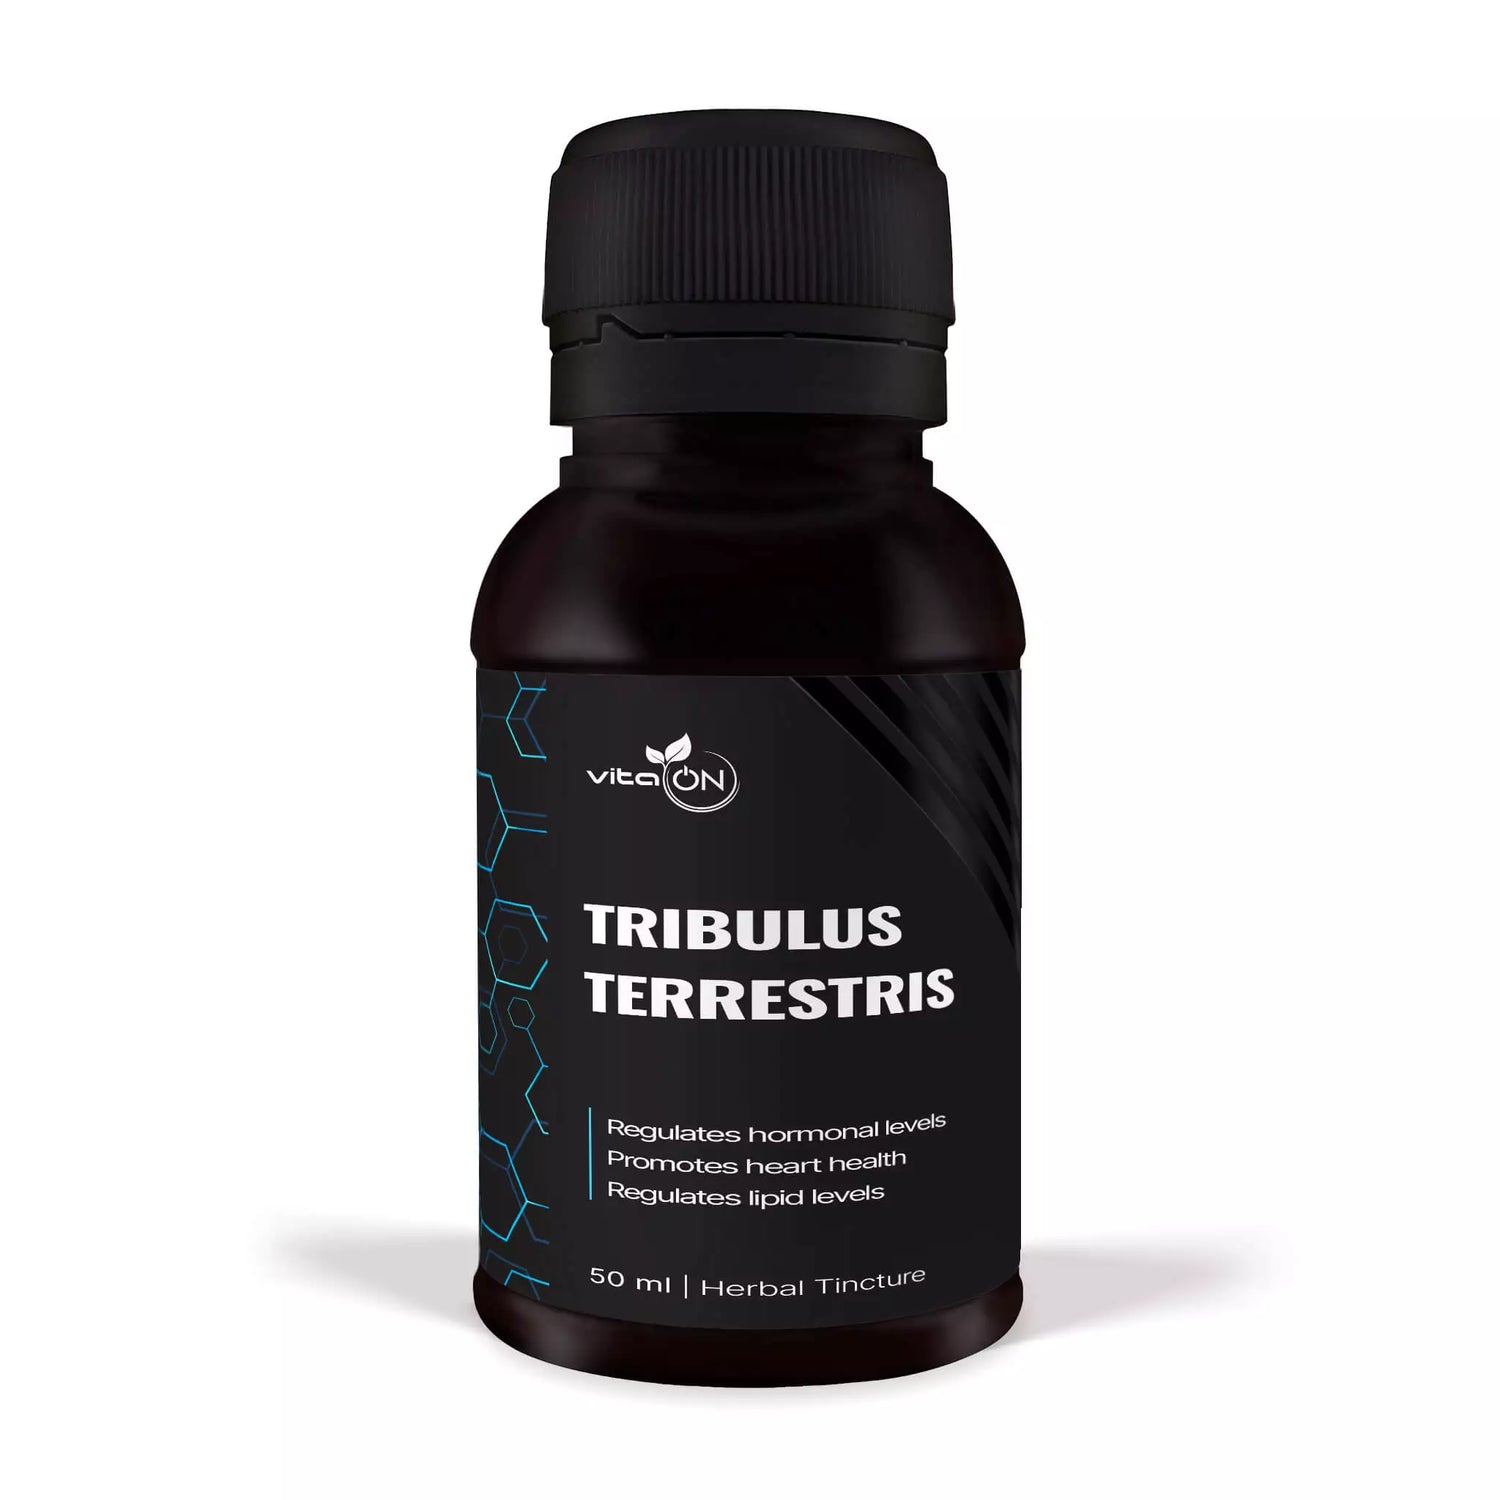 Wysokiej jakości nalewka z Tribulus terrestris - poprawia libido, chroni serce i ogólny stan zdrowia.